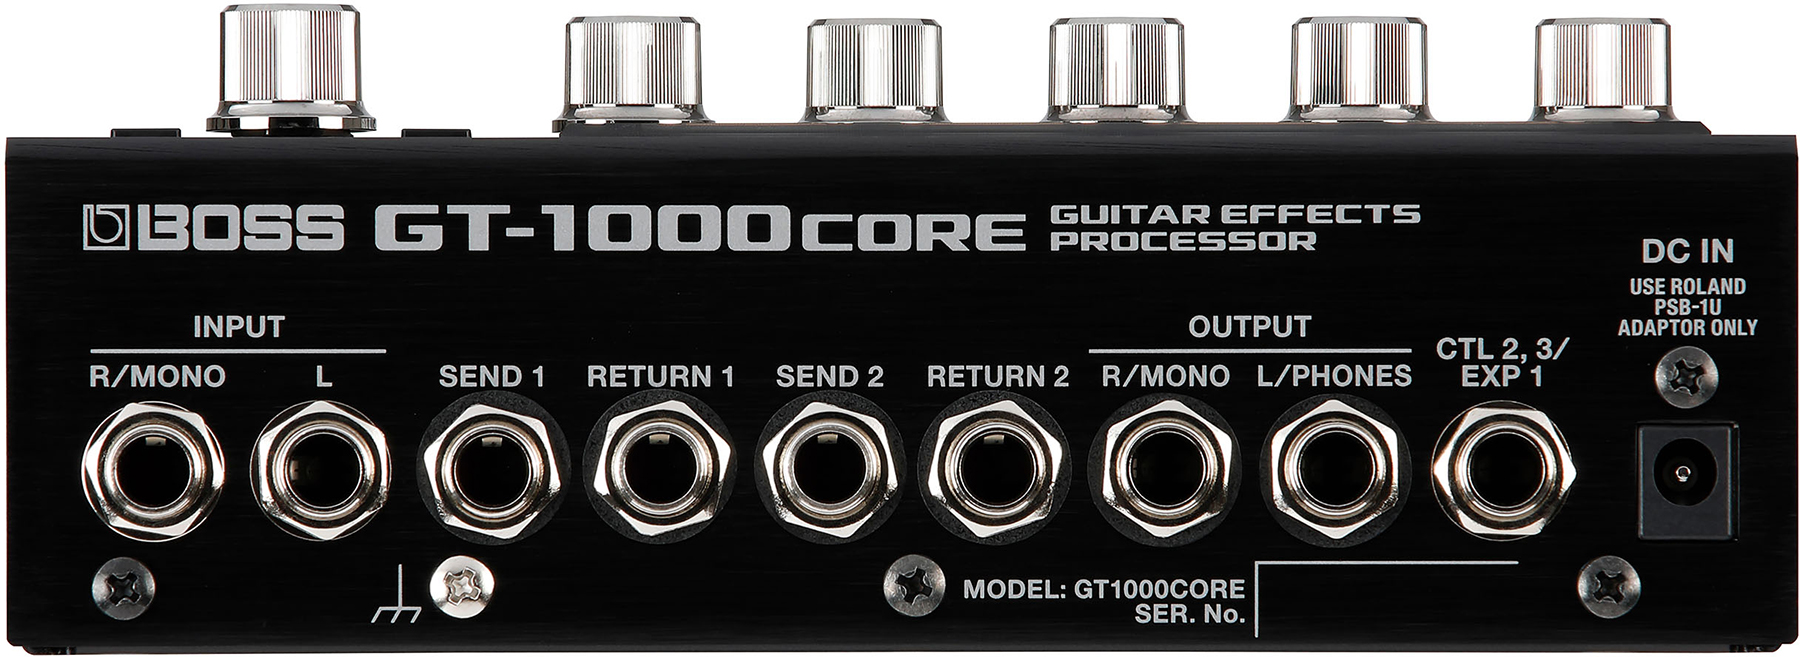 Boss Gt1000core Guitar Effects Processor - Gitarrenverstärker-Modellierungssimulation - Variation 1